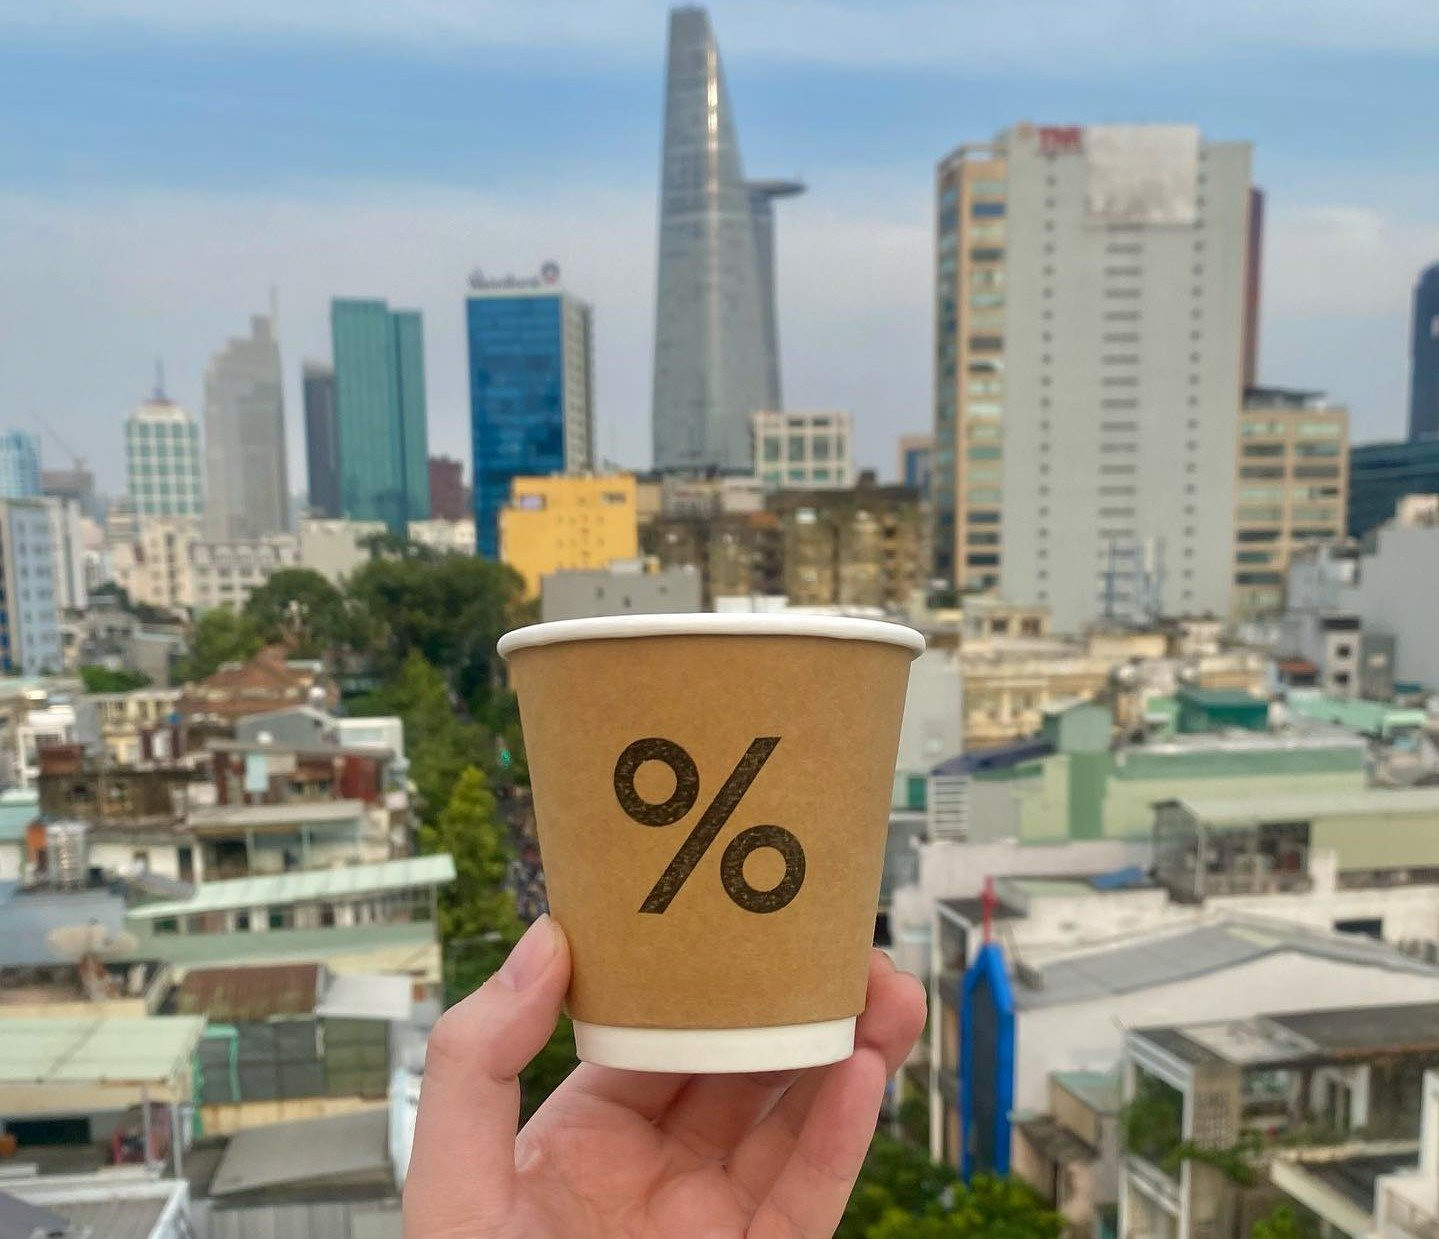 Chuỗi cà phê Nhật Bản được ví như &quot;Starbucks tiếp theo&quot; mở cửa hàng đầu tiên tại Việt Nam: Mất 3 năm chuẩn bị, sẽ ra Hà Nội, Hội An, Phú Quốc - Ảnh 1.